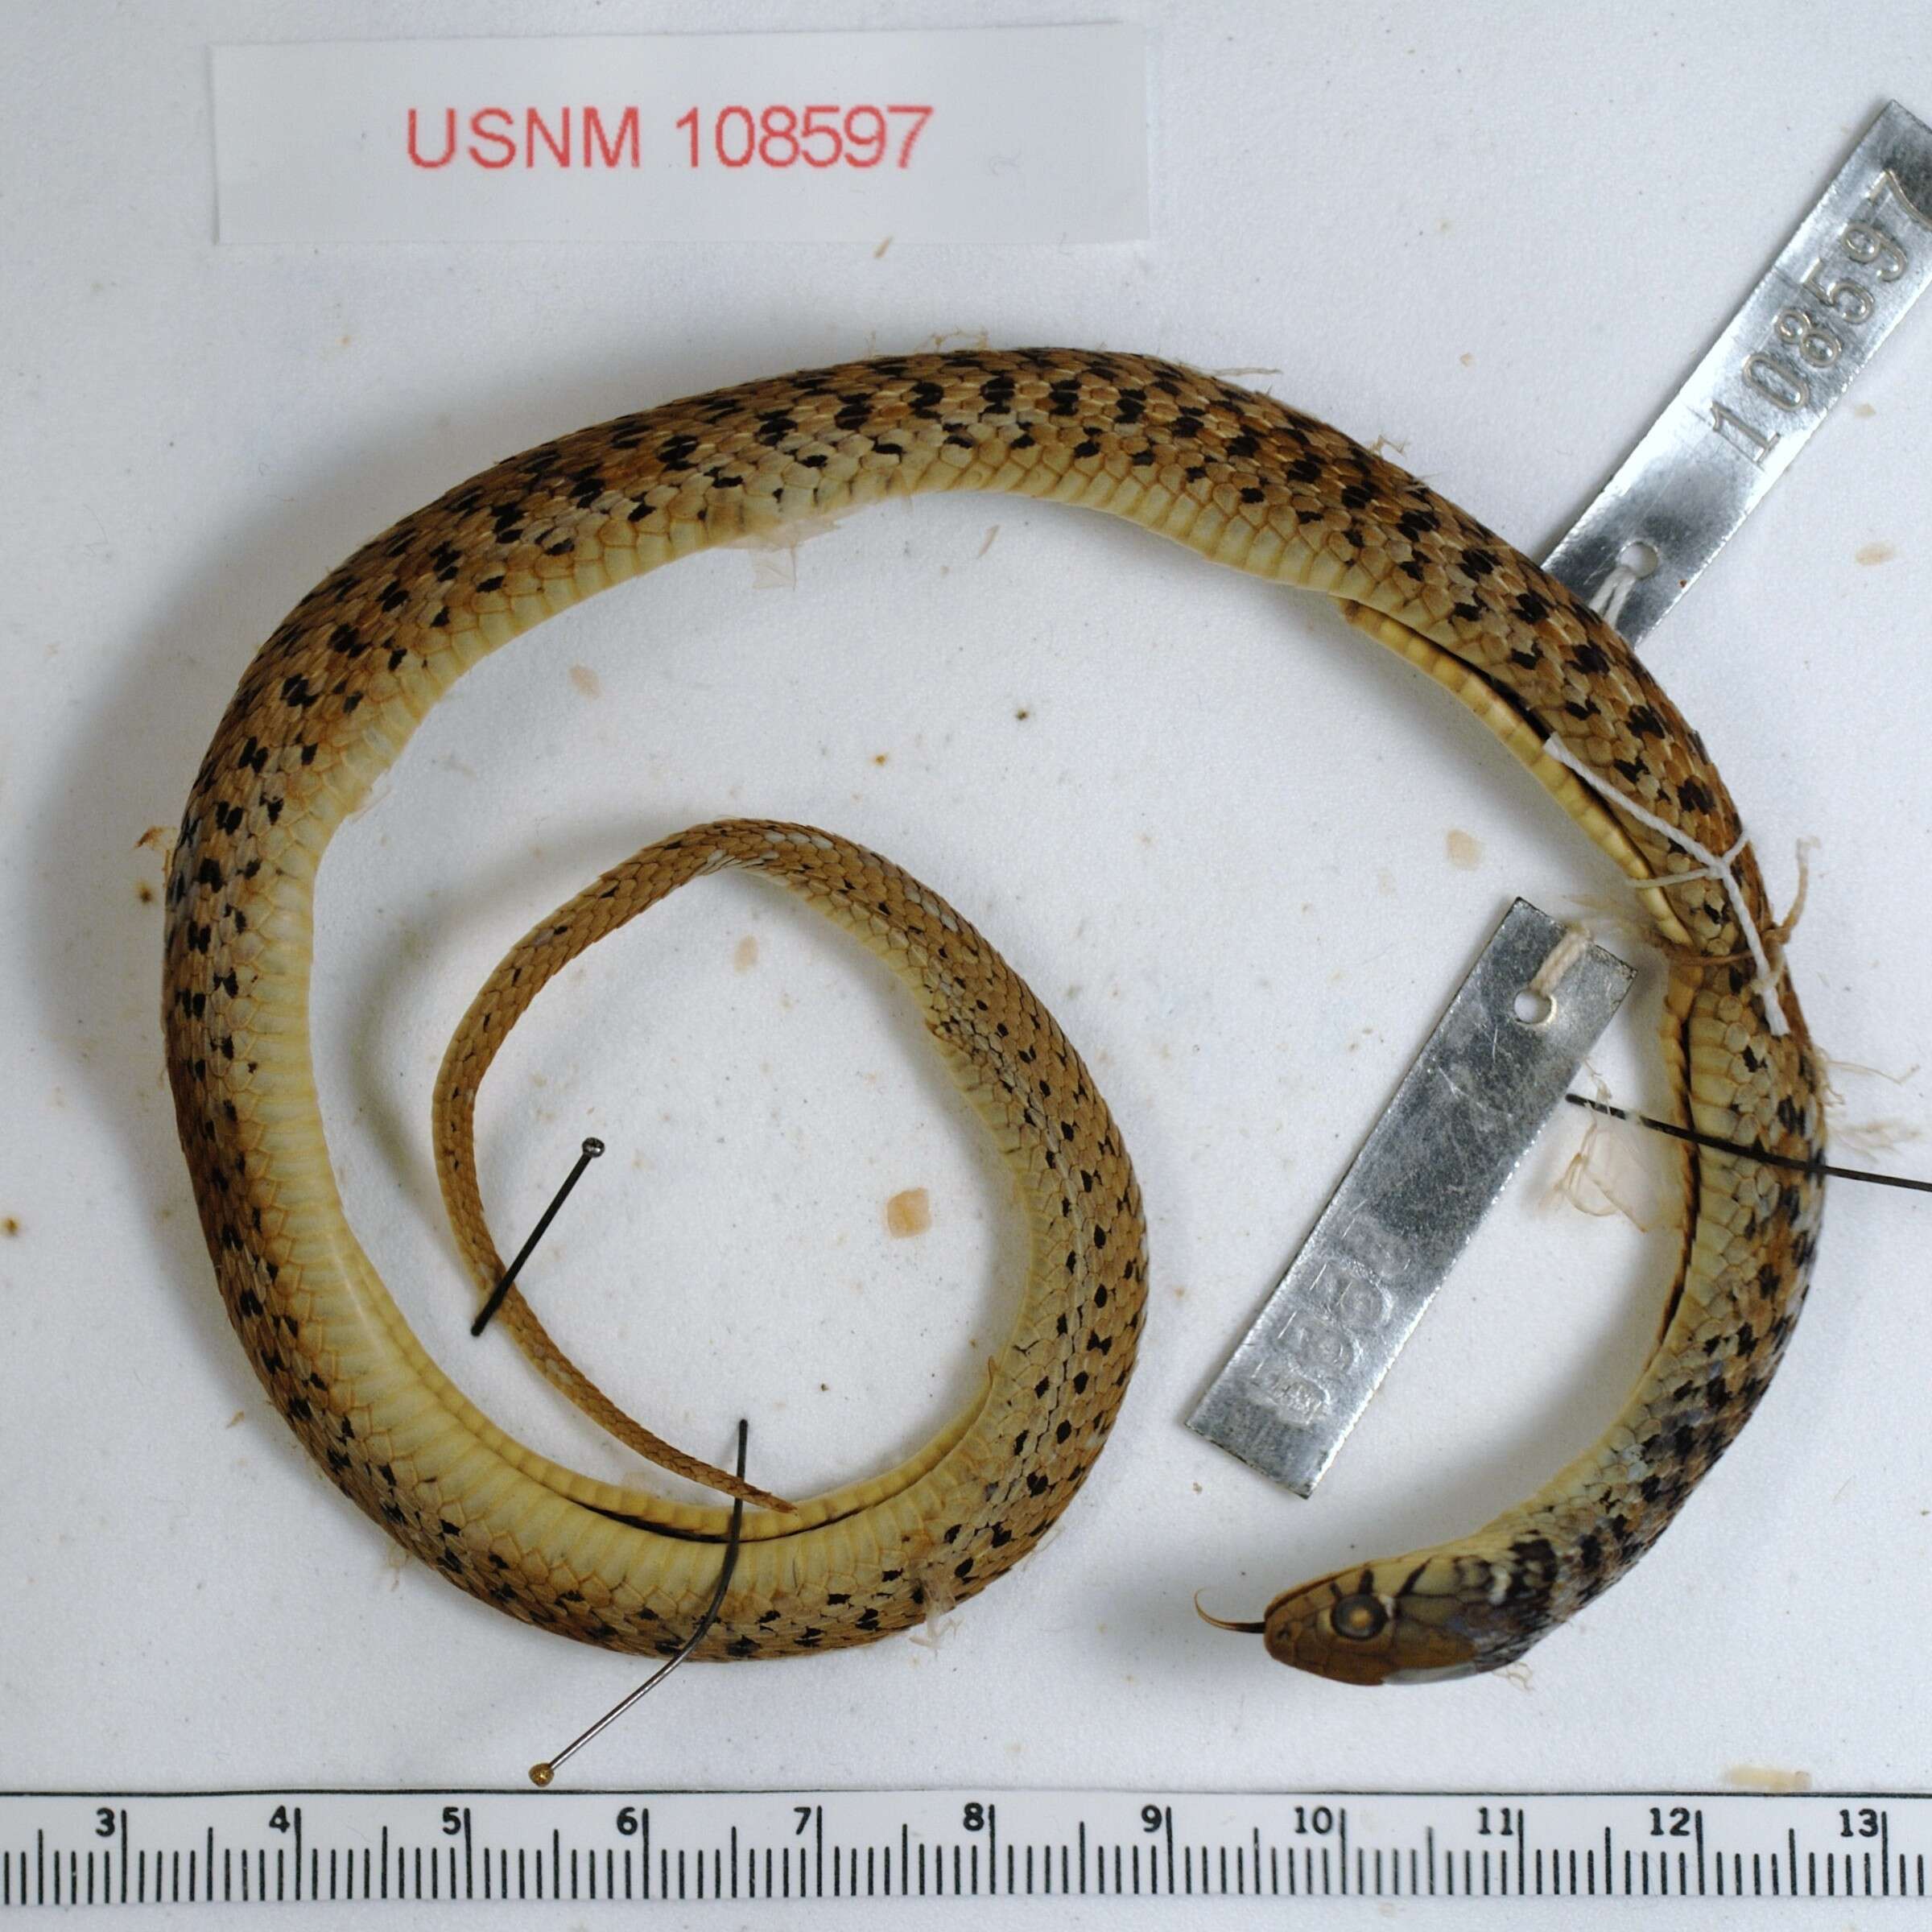 Image of Checkered Garter Snake